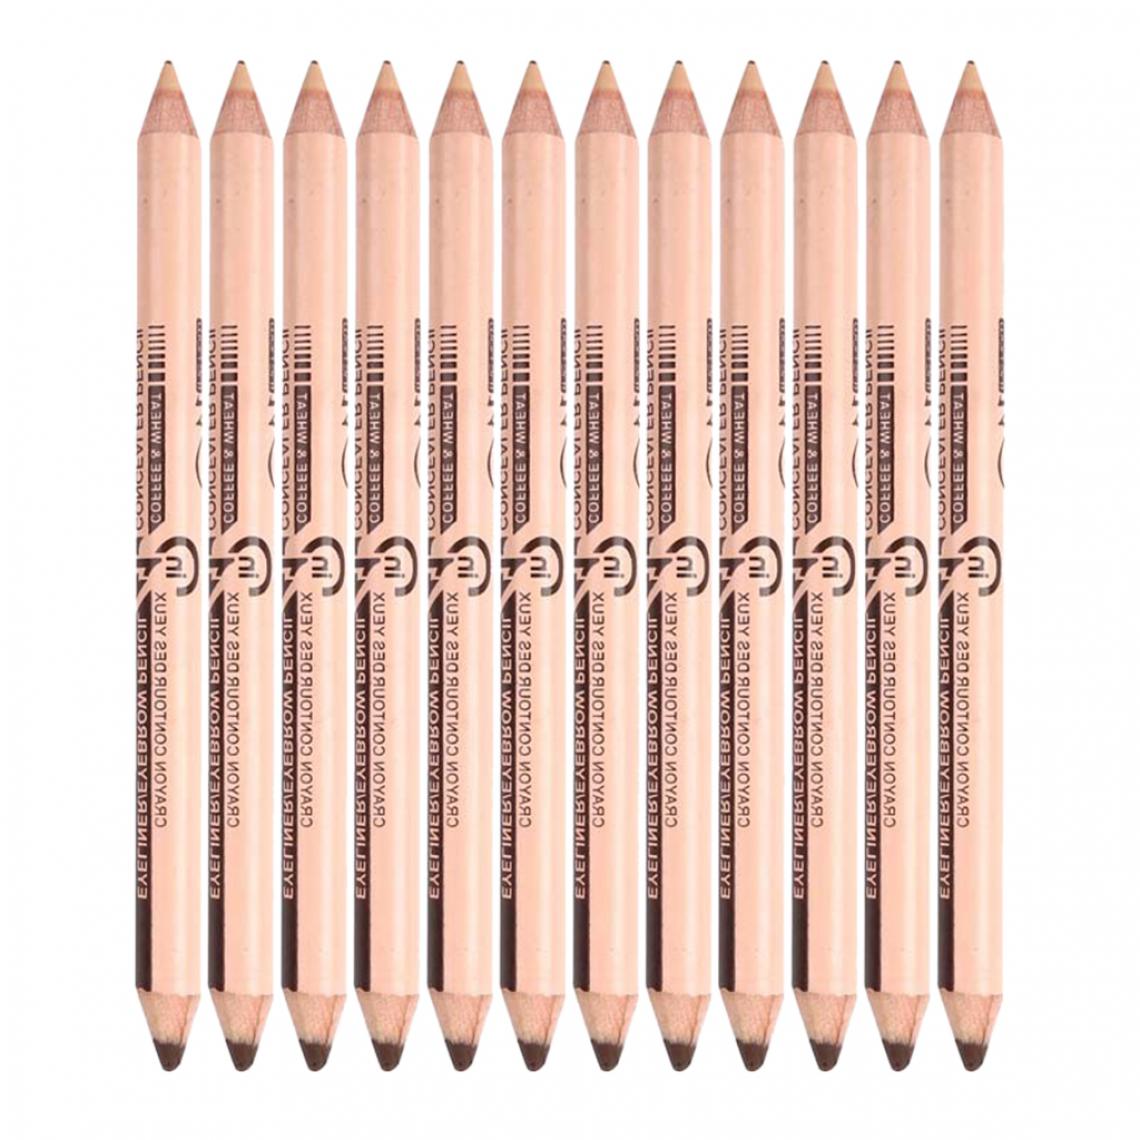 marque generique - 12 pièces 2 en 1 Crayon Eyeliner Crayon + Correcteur Crayon Ensemble Maquillage # 3 - Maquillage et coiffure